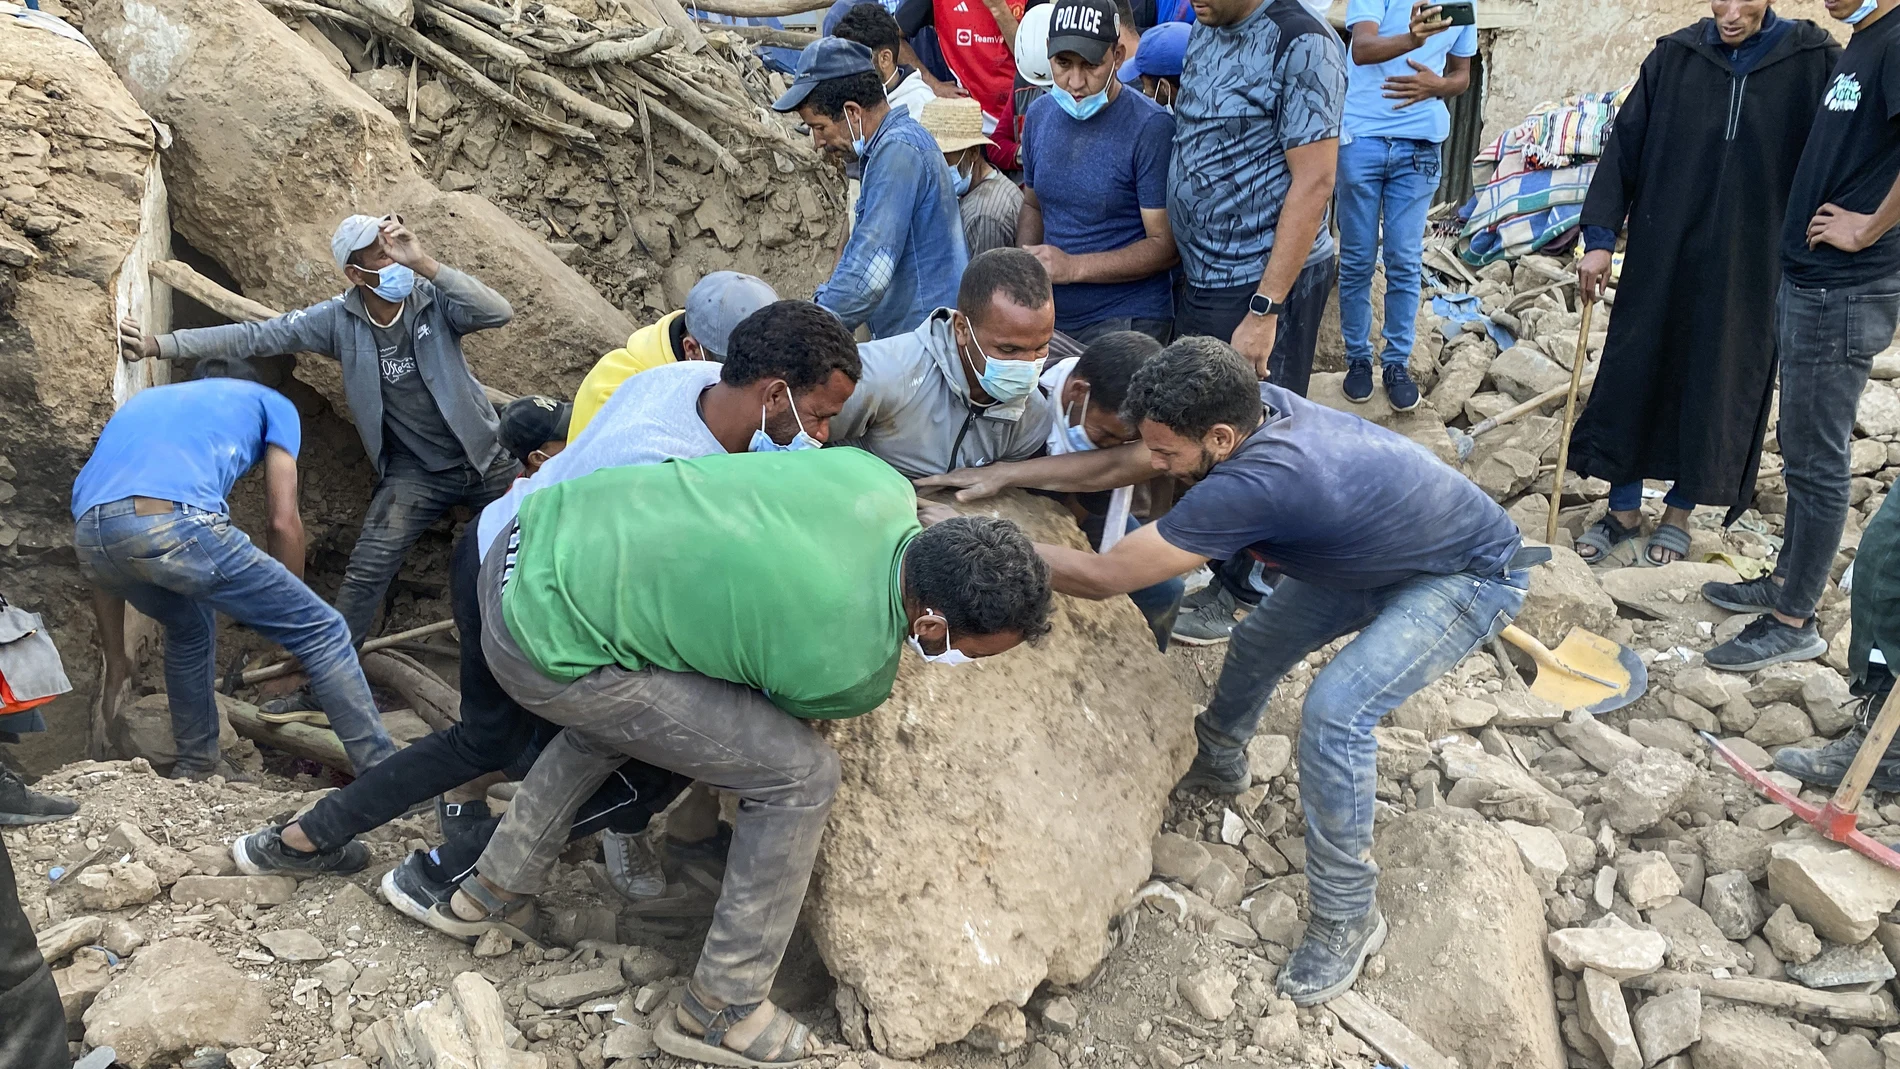 Miembros de Protección Civil, bomberos y personal civil siguen buscando a los desaparecidos bajo los escombros hoy lunes en el pueblo de Tnirt tras el terremoto que sacudió Marruecos el pasado viernes. 